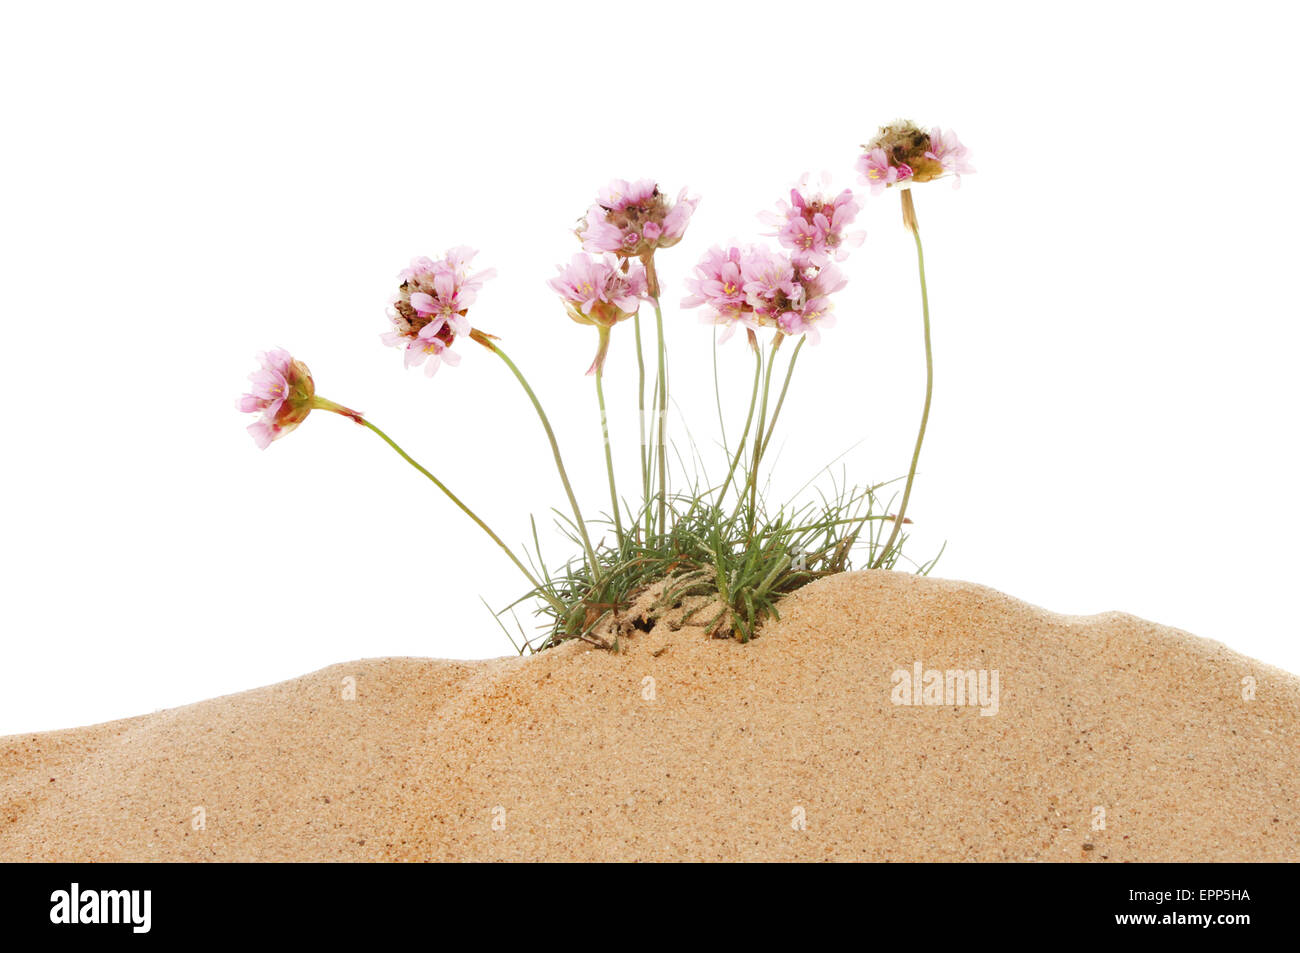 Massif de l'épargne, l'Armeria maritima, fleurs qui poussent dans le sable sur un fond blanc. Banque D'Images